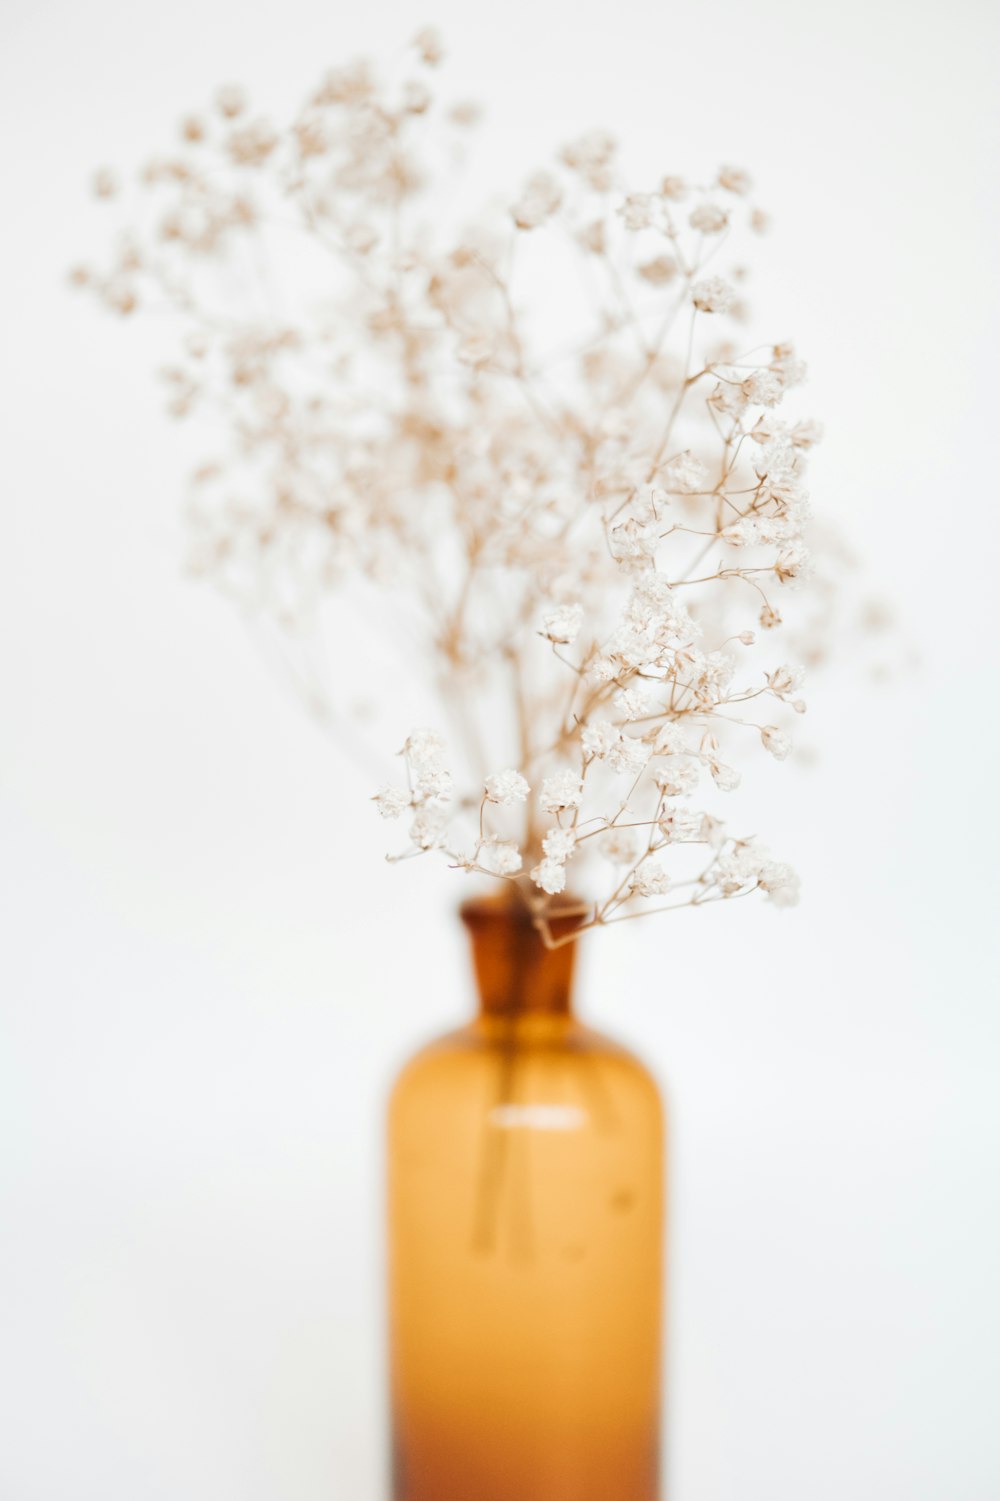 주황색 유리 병에 흰 꽃